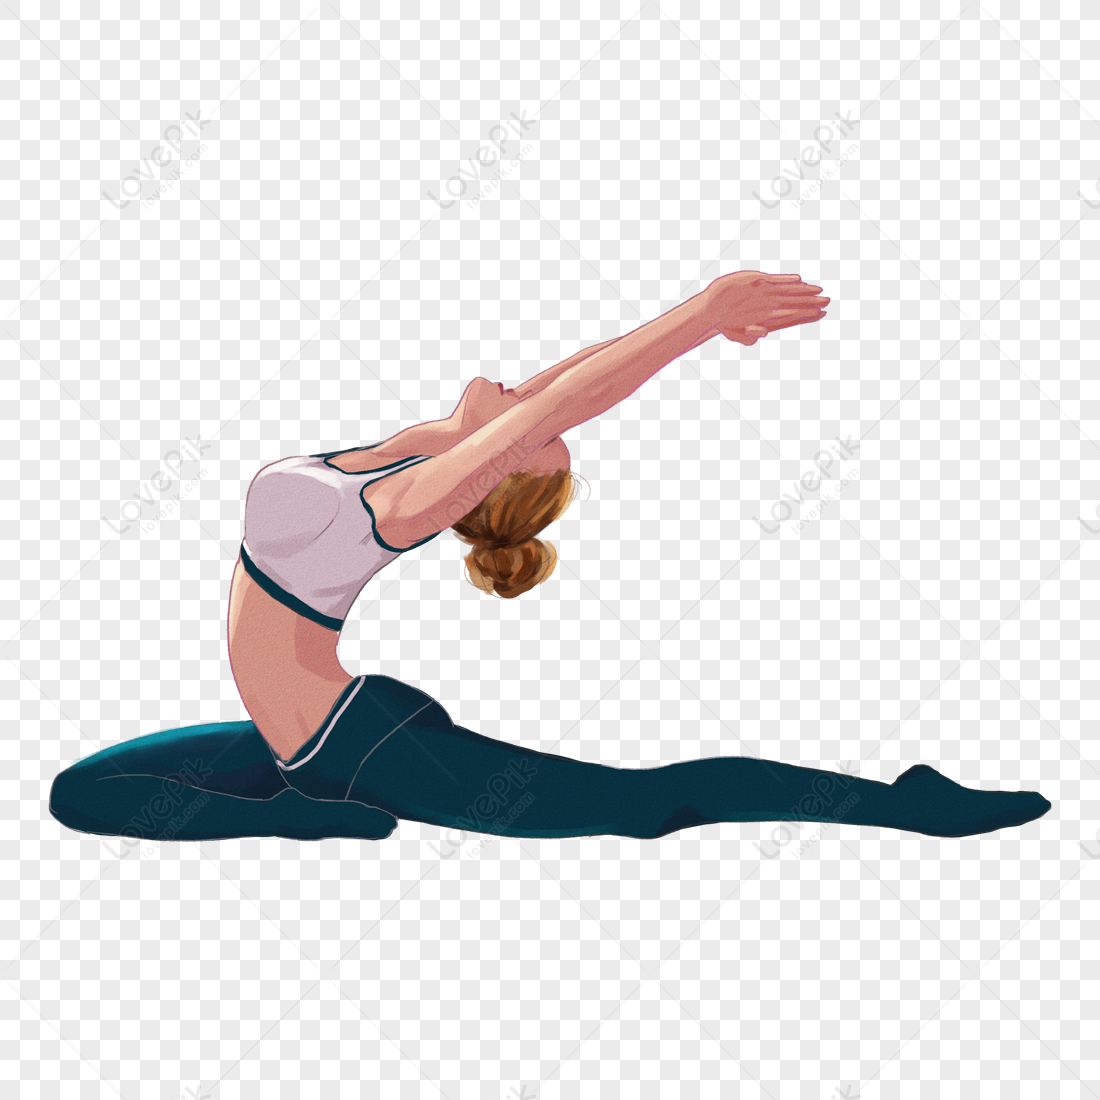 Hình ảnh cô gái tập yoga với nền PNG sáng tạo sẽ mang đến cho bạn sự cảm nhận khác biệt trong việc tập luyện. Bạn sẽ được truyền cảm hứng và ham muốn tập yoga hơn khi chiêm ngưỡng hình ảnh này. Hãy xem hình ảnh để cảm nhận sự thanh lịch và dễ chịu trong tư thế yoga.